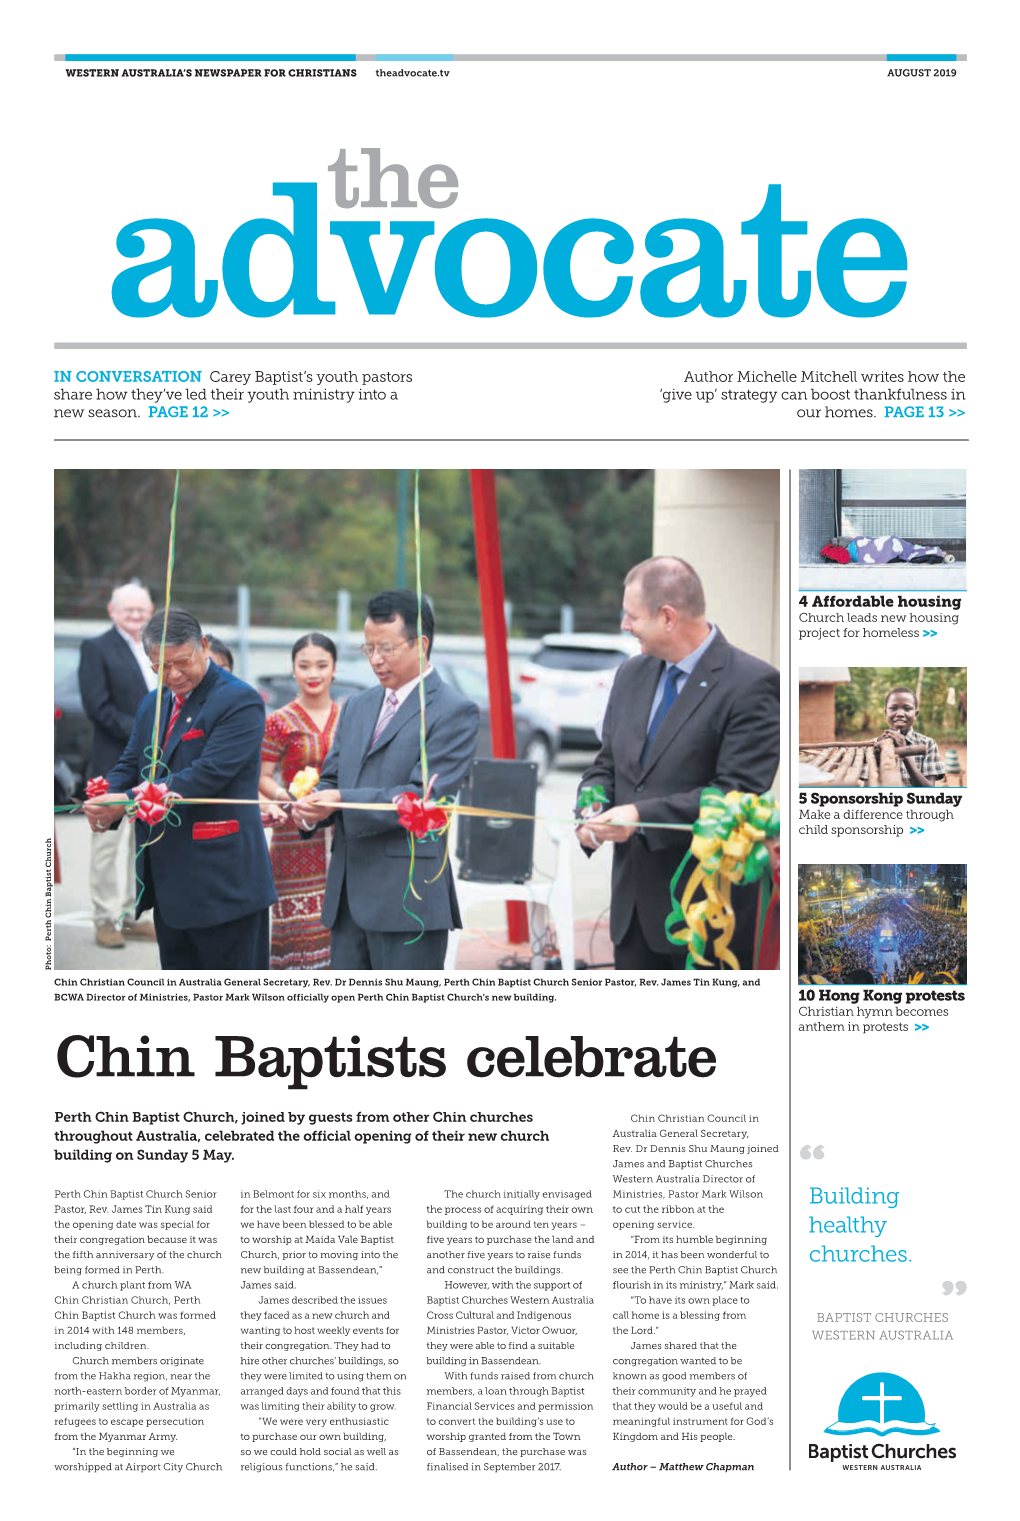 Chin Baptists Celebrate